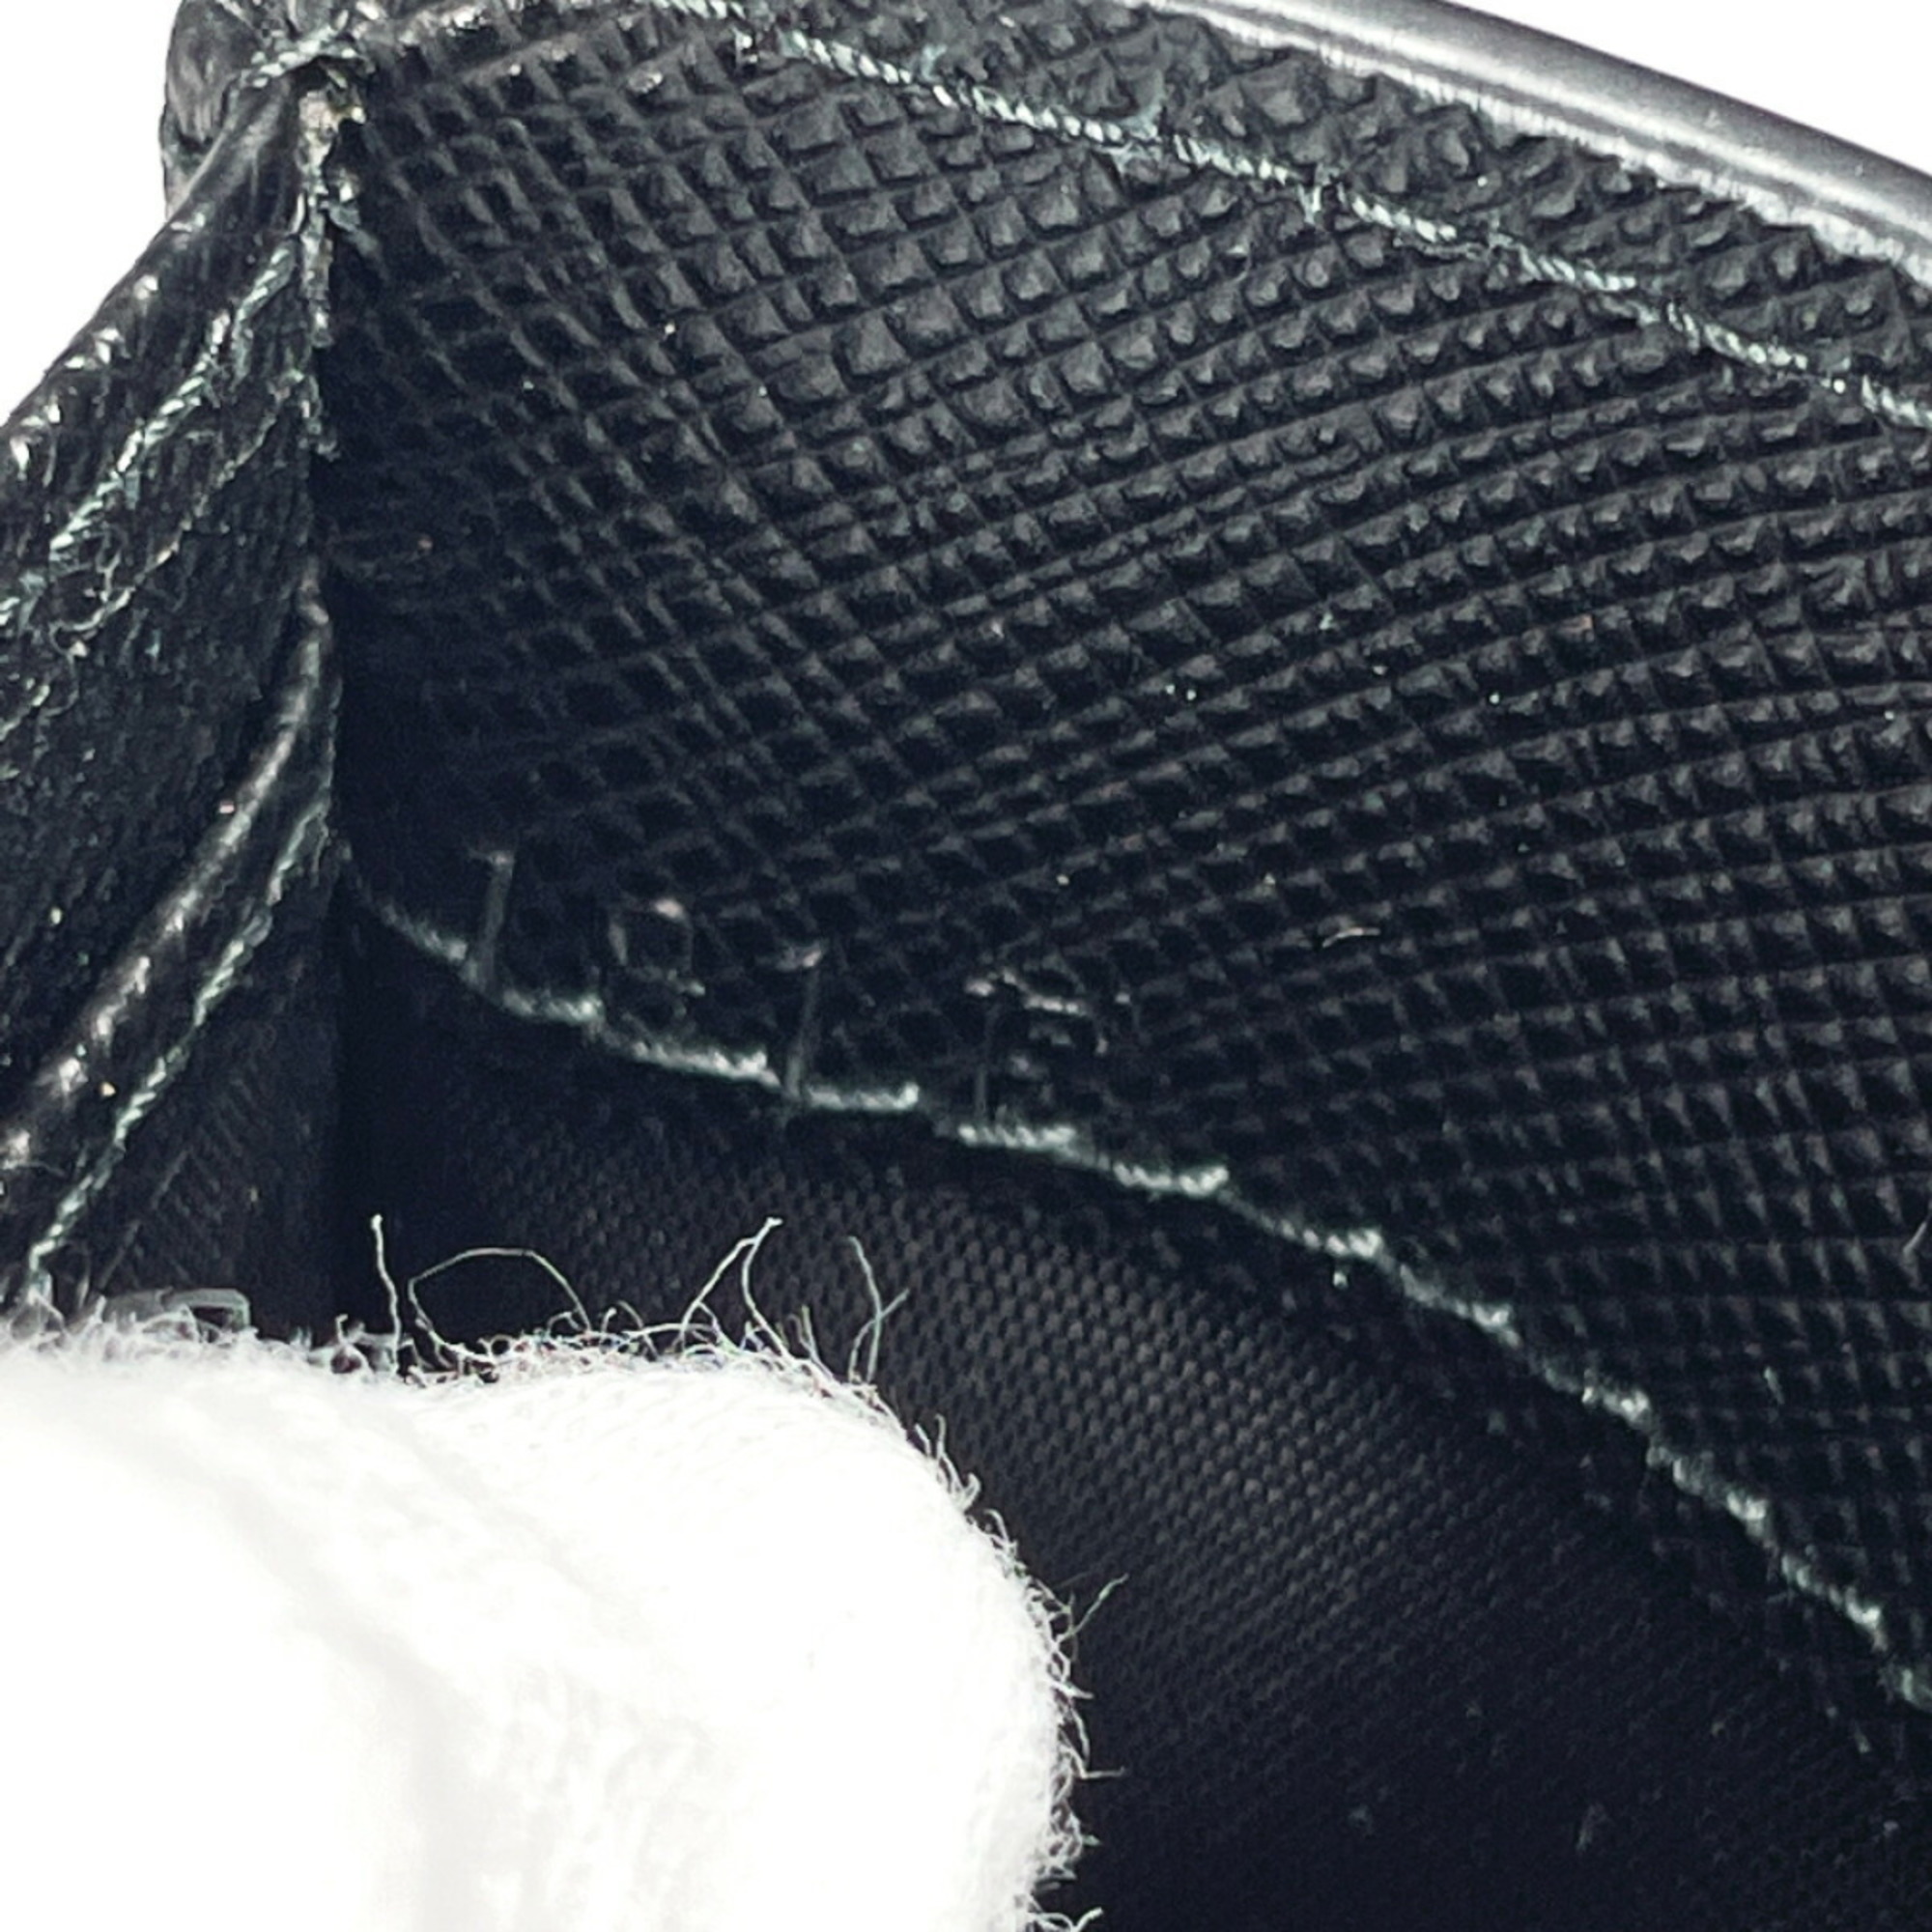 PRADA 2MH021 Tri-fold Wallet Saffiano Leather Black Unisex N4023888